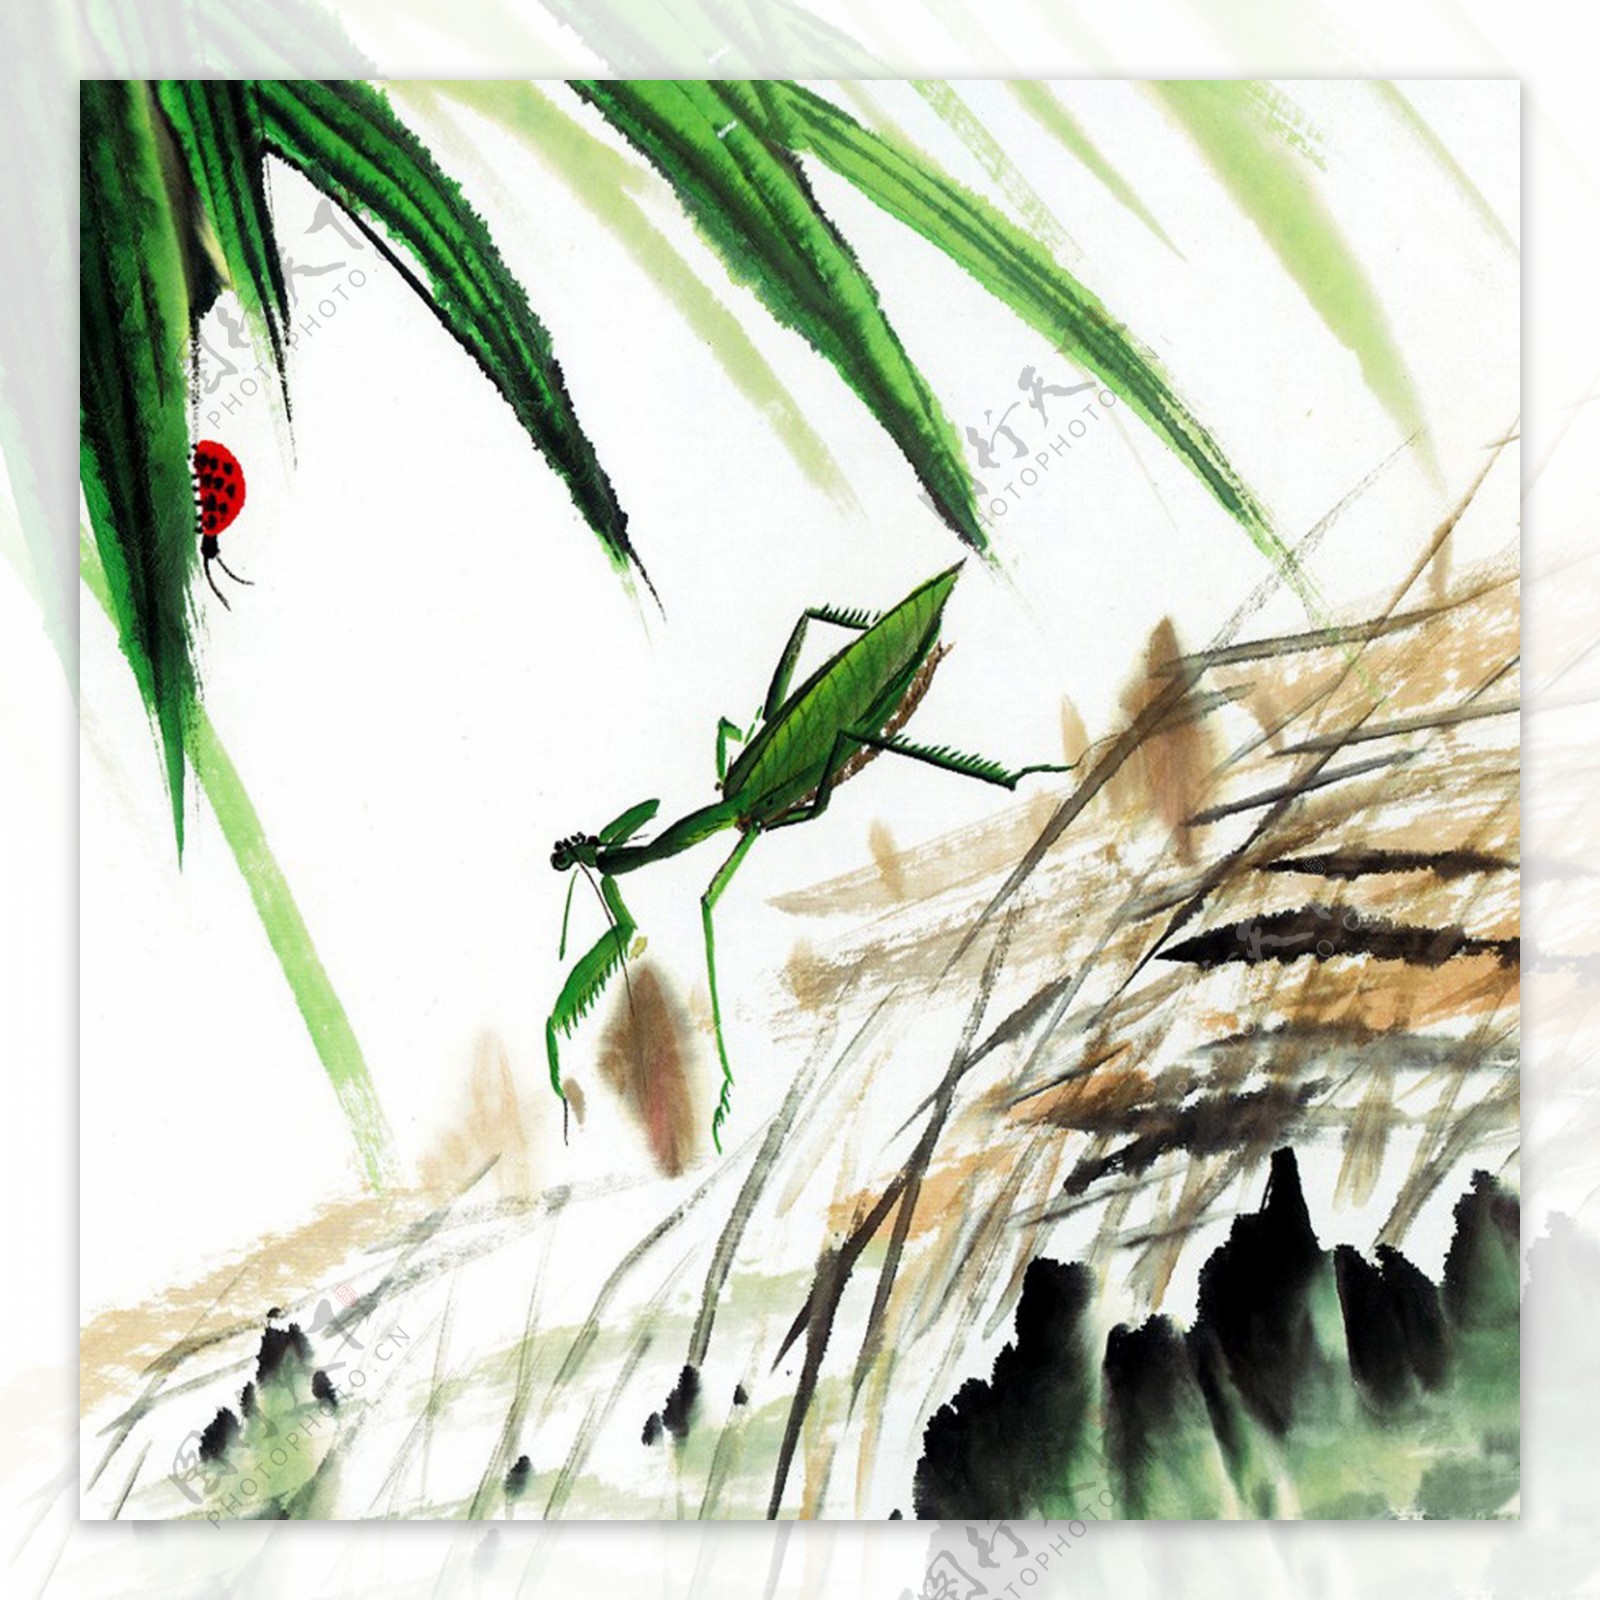 描绘螳螂的中国画